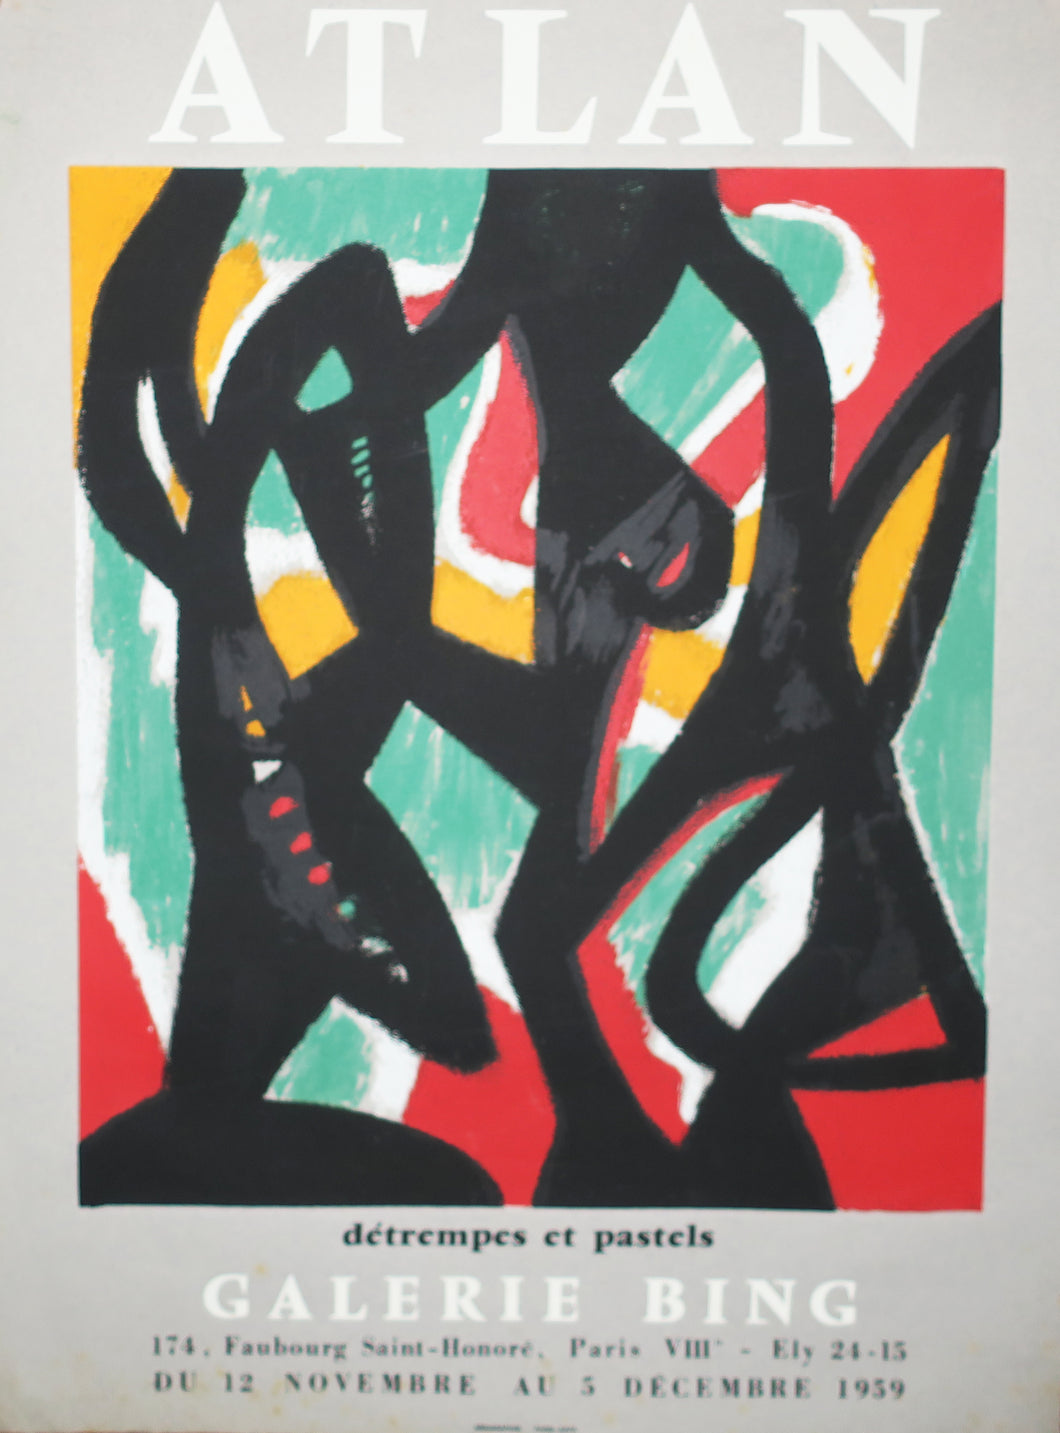 Affiche pour l'exposition « Détrempes et pastels » à la galerie Bing (Paris VIIIème), du 12 novembre au 5 décembre 1959.